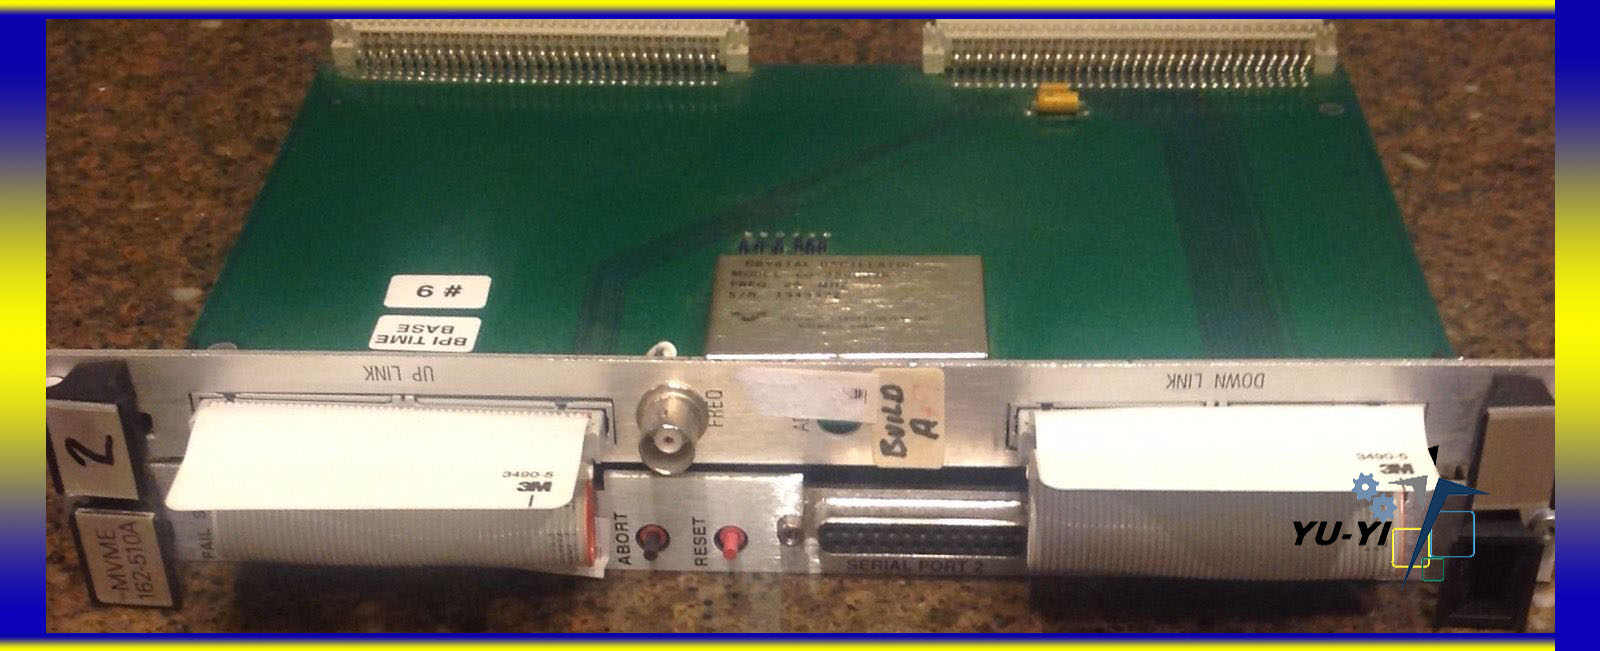 Motorola MVME card MVME162-510A pc board with crystal oscillator